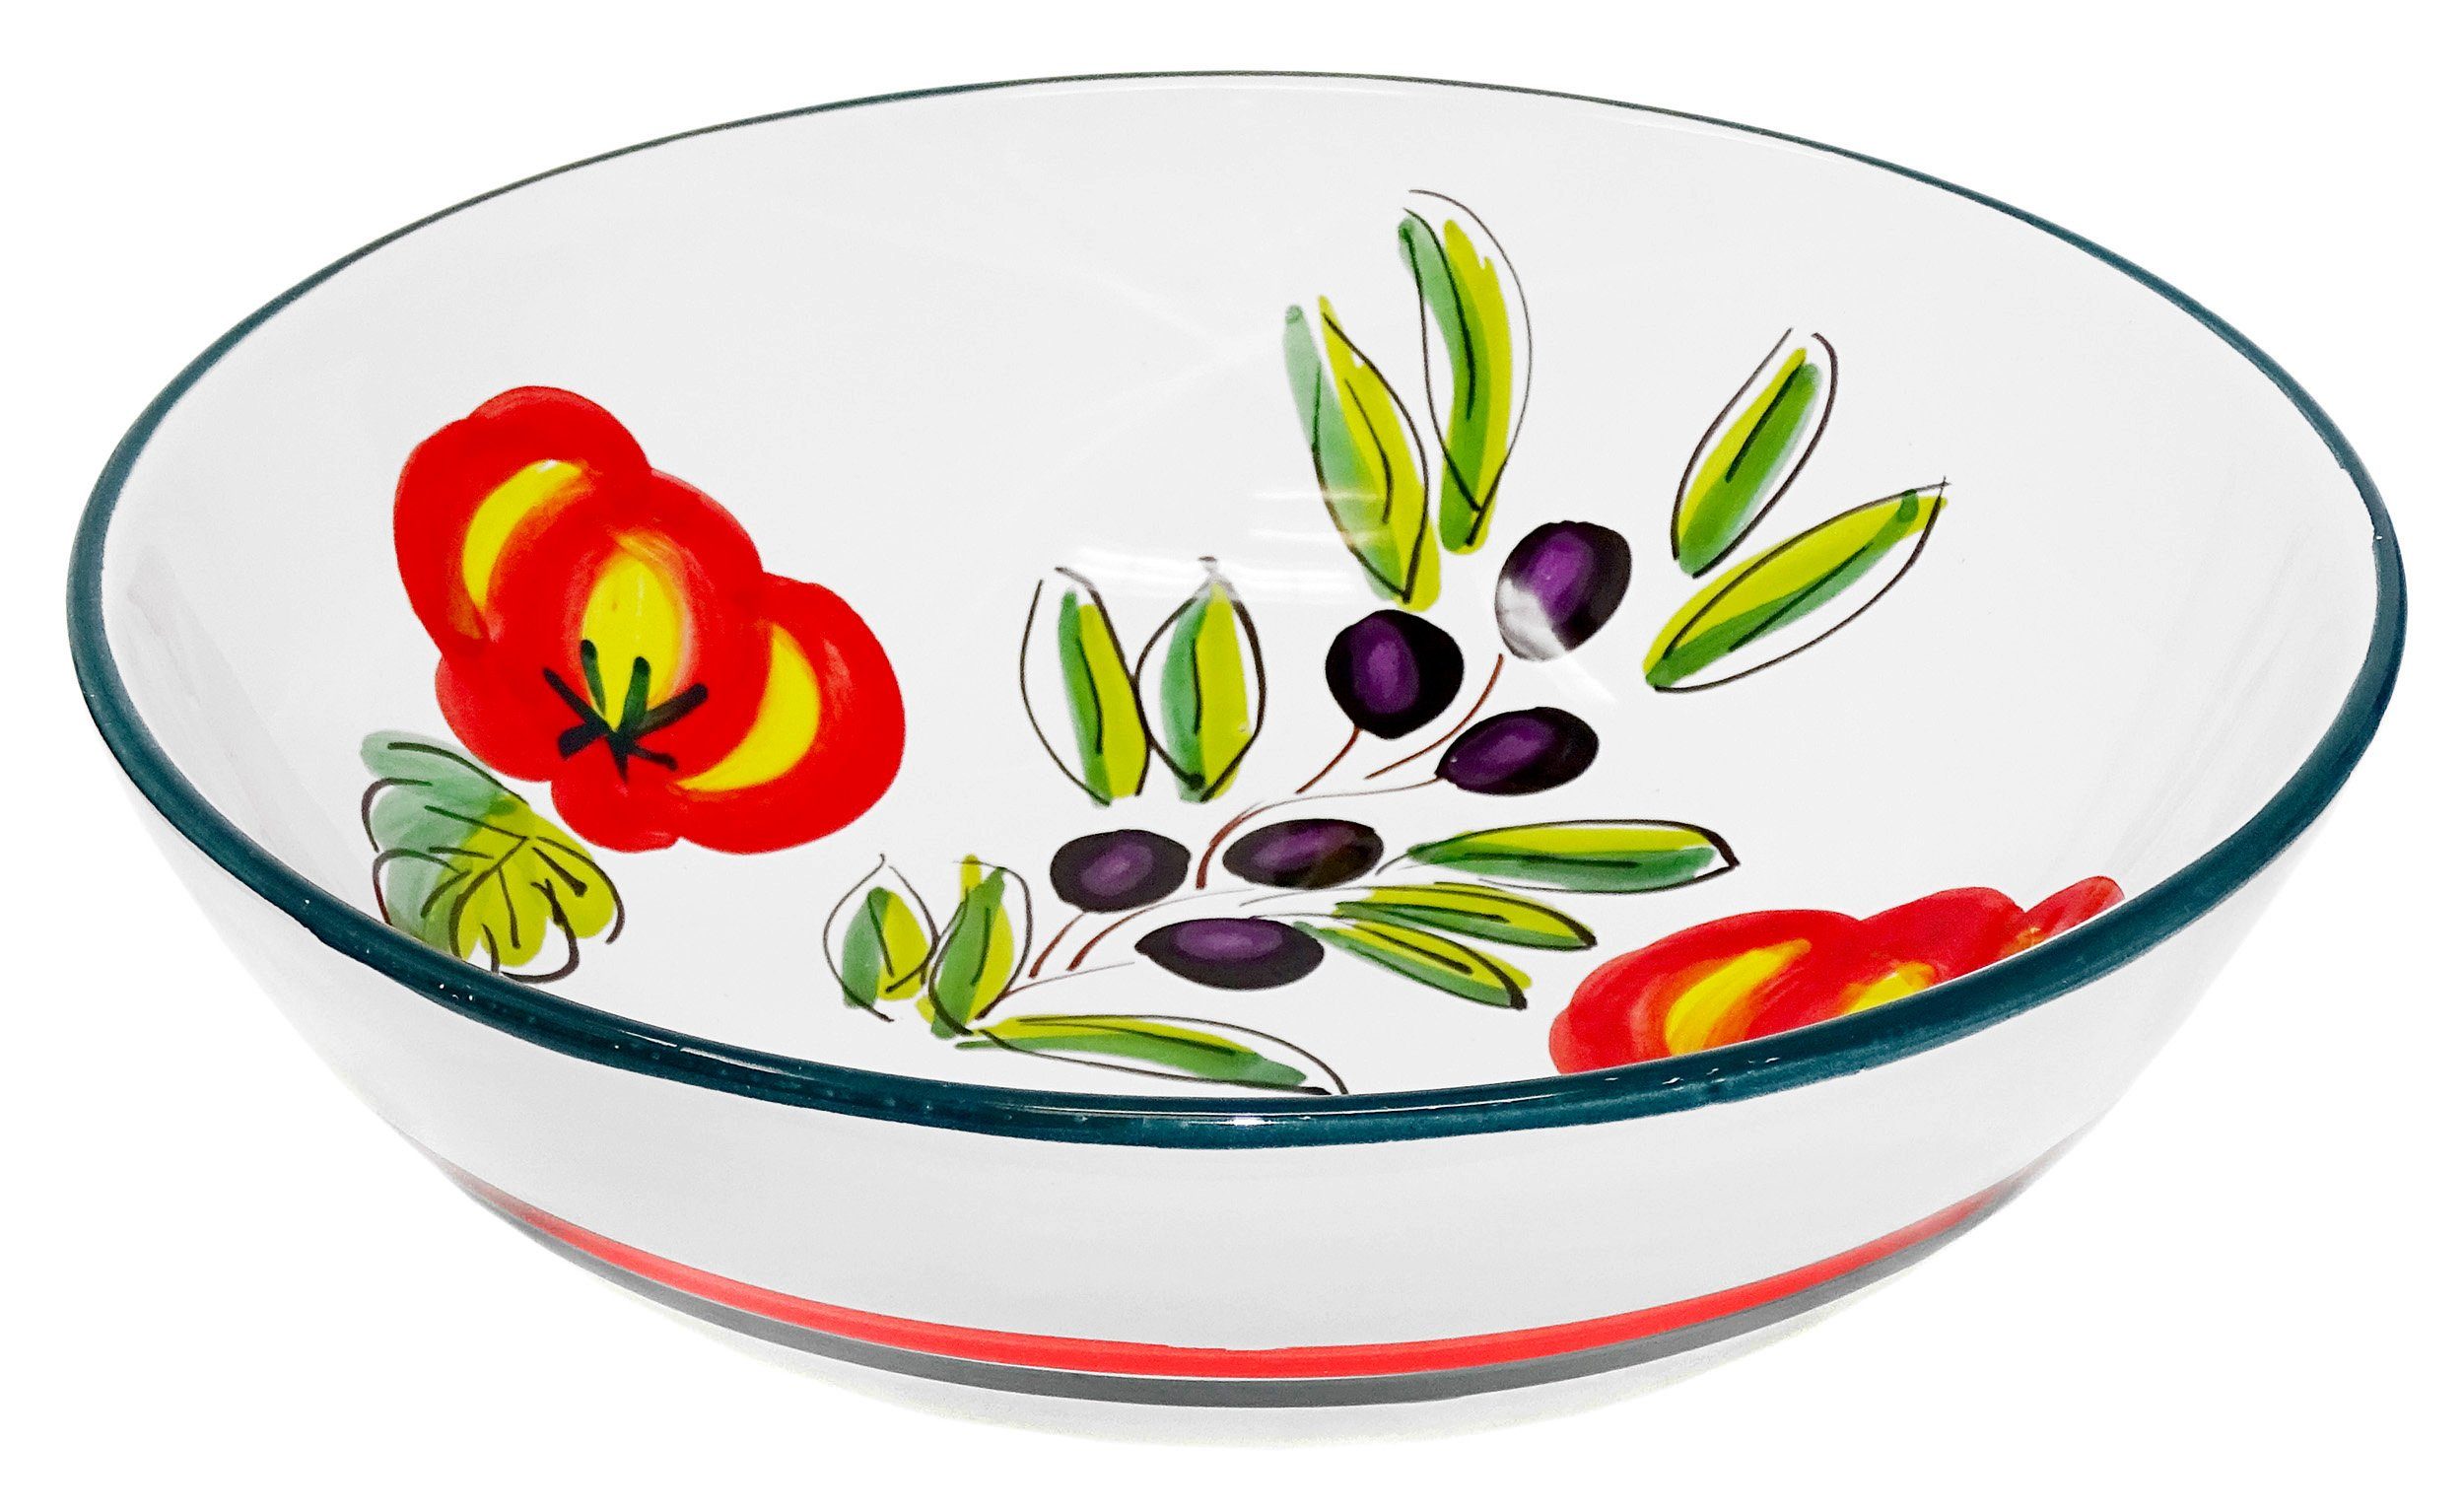 Olive Salatschüssel, Tomate Servierschüssel, handgemacht Lashuma Runde Keramik, Obstschale